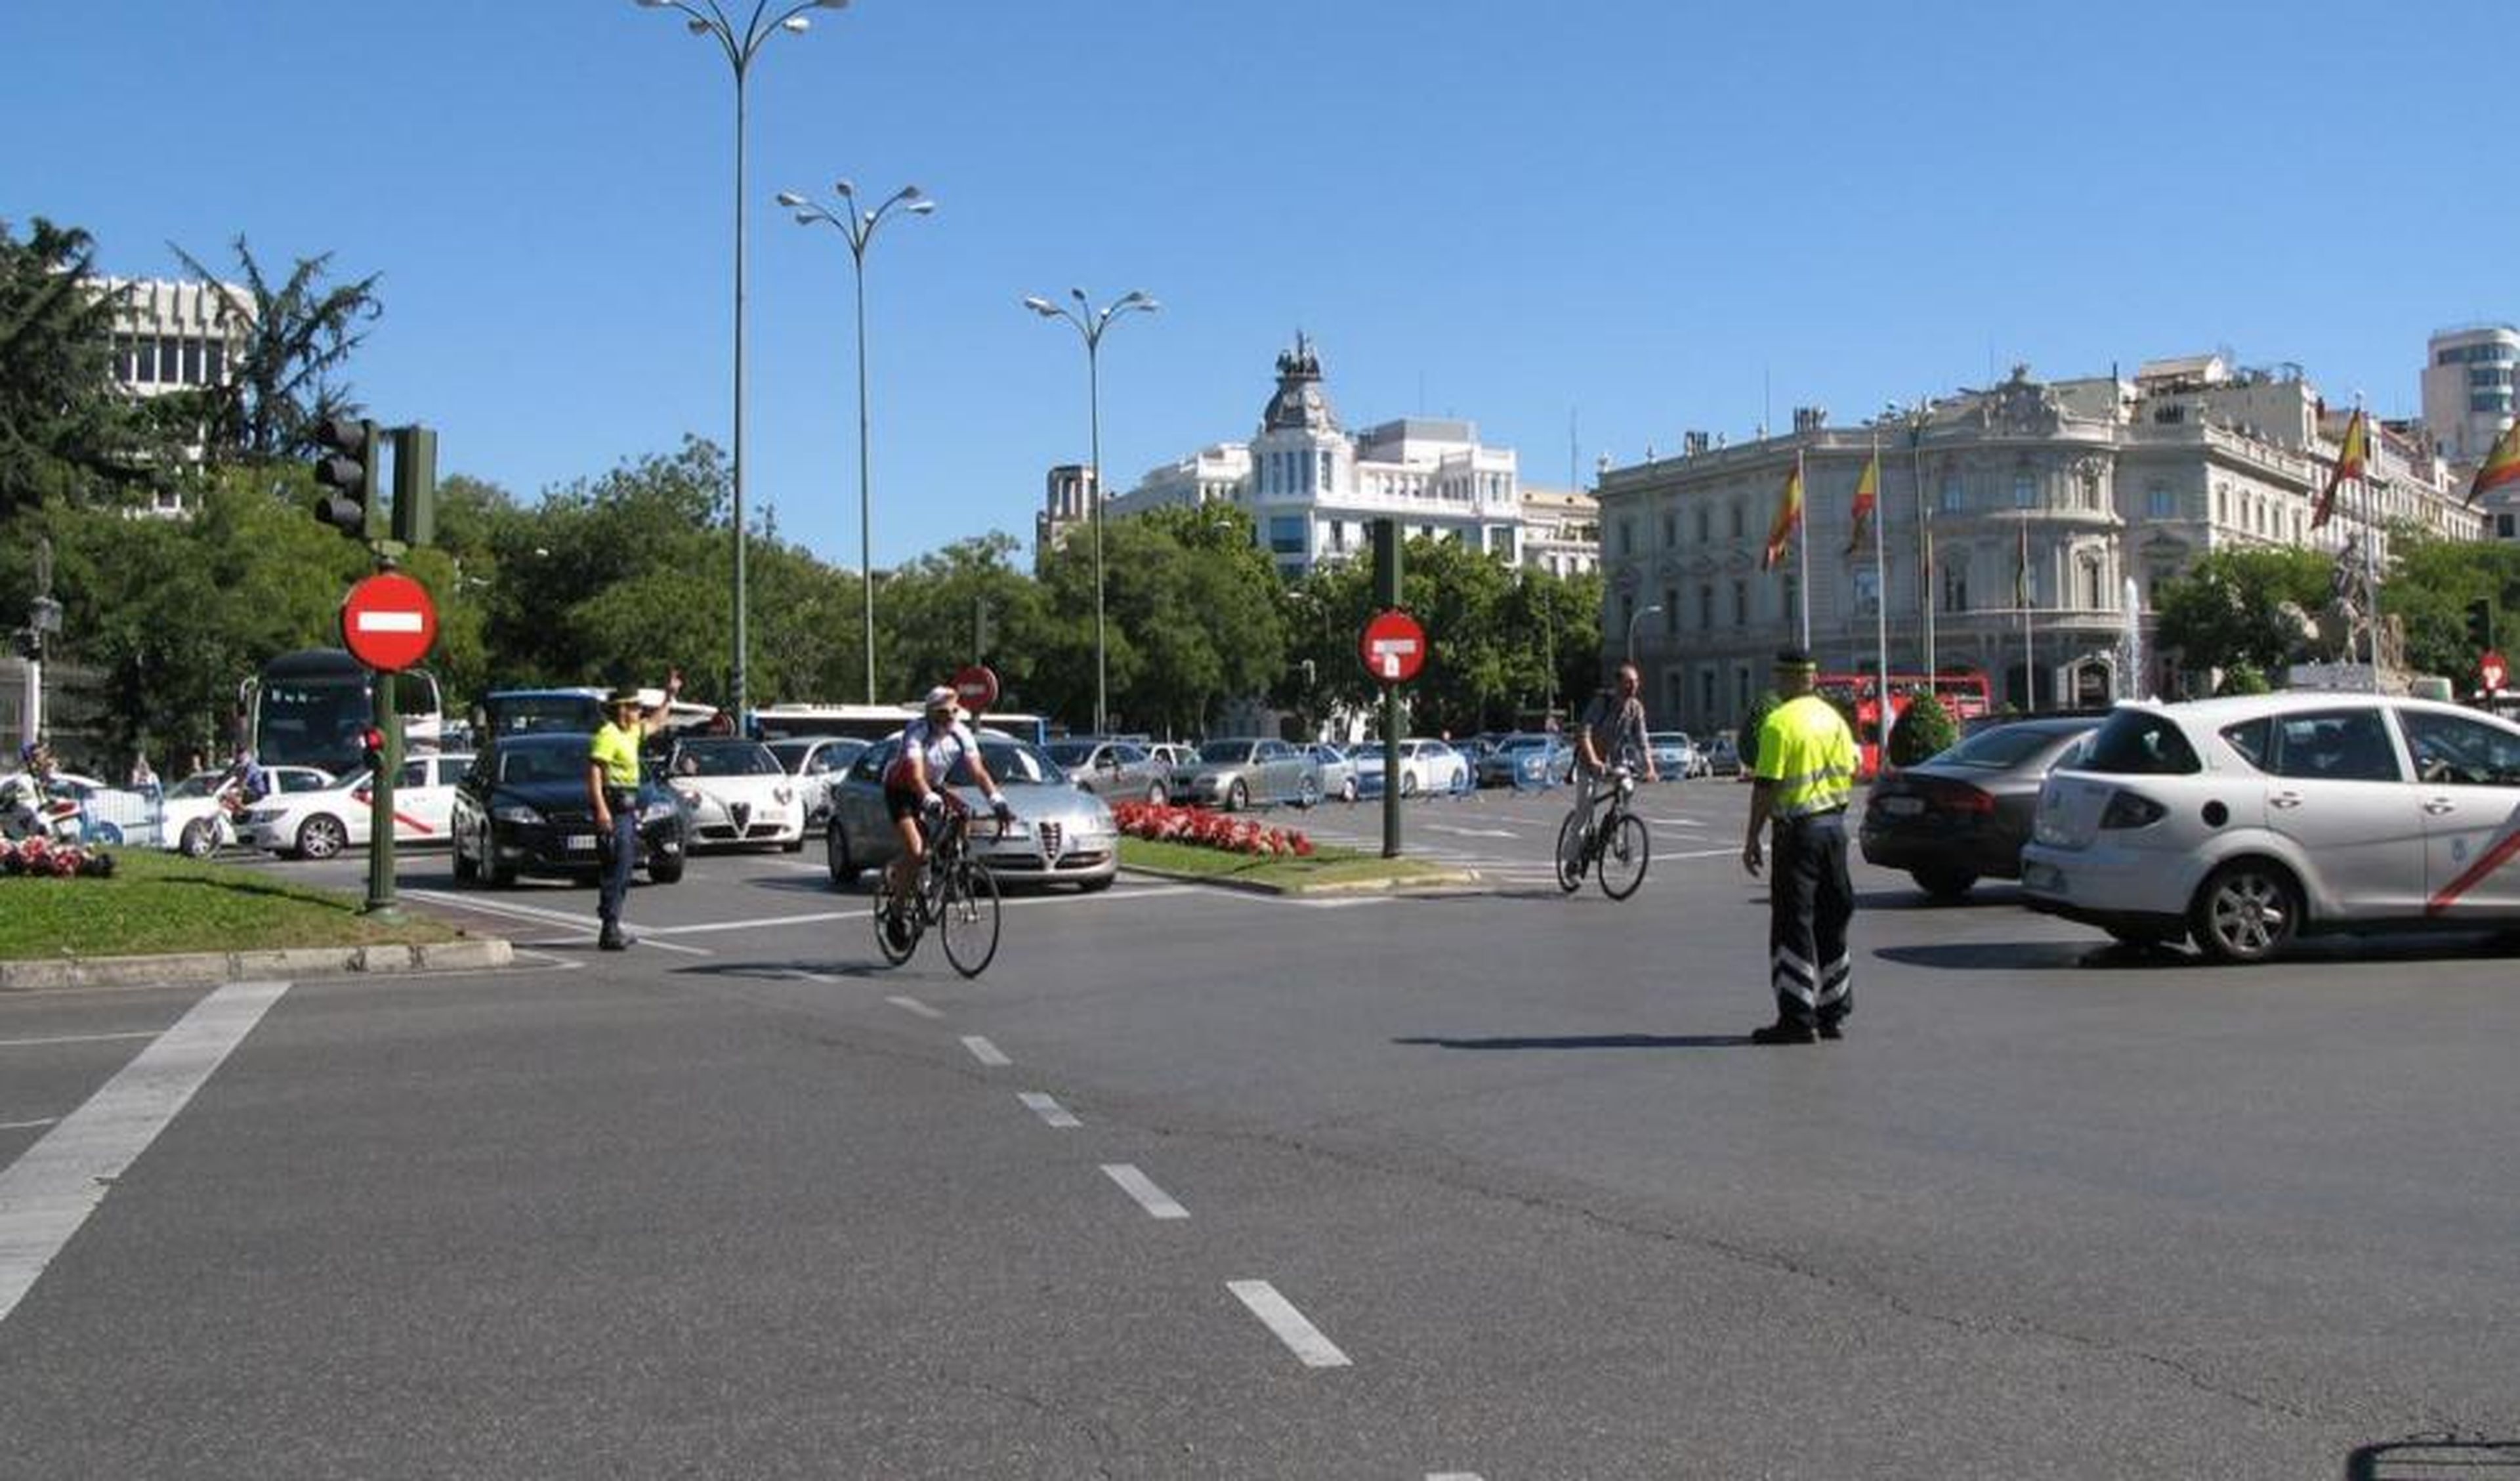 Restricciones tráfico Madrid Central